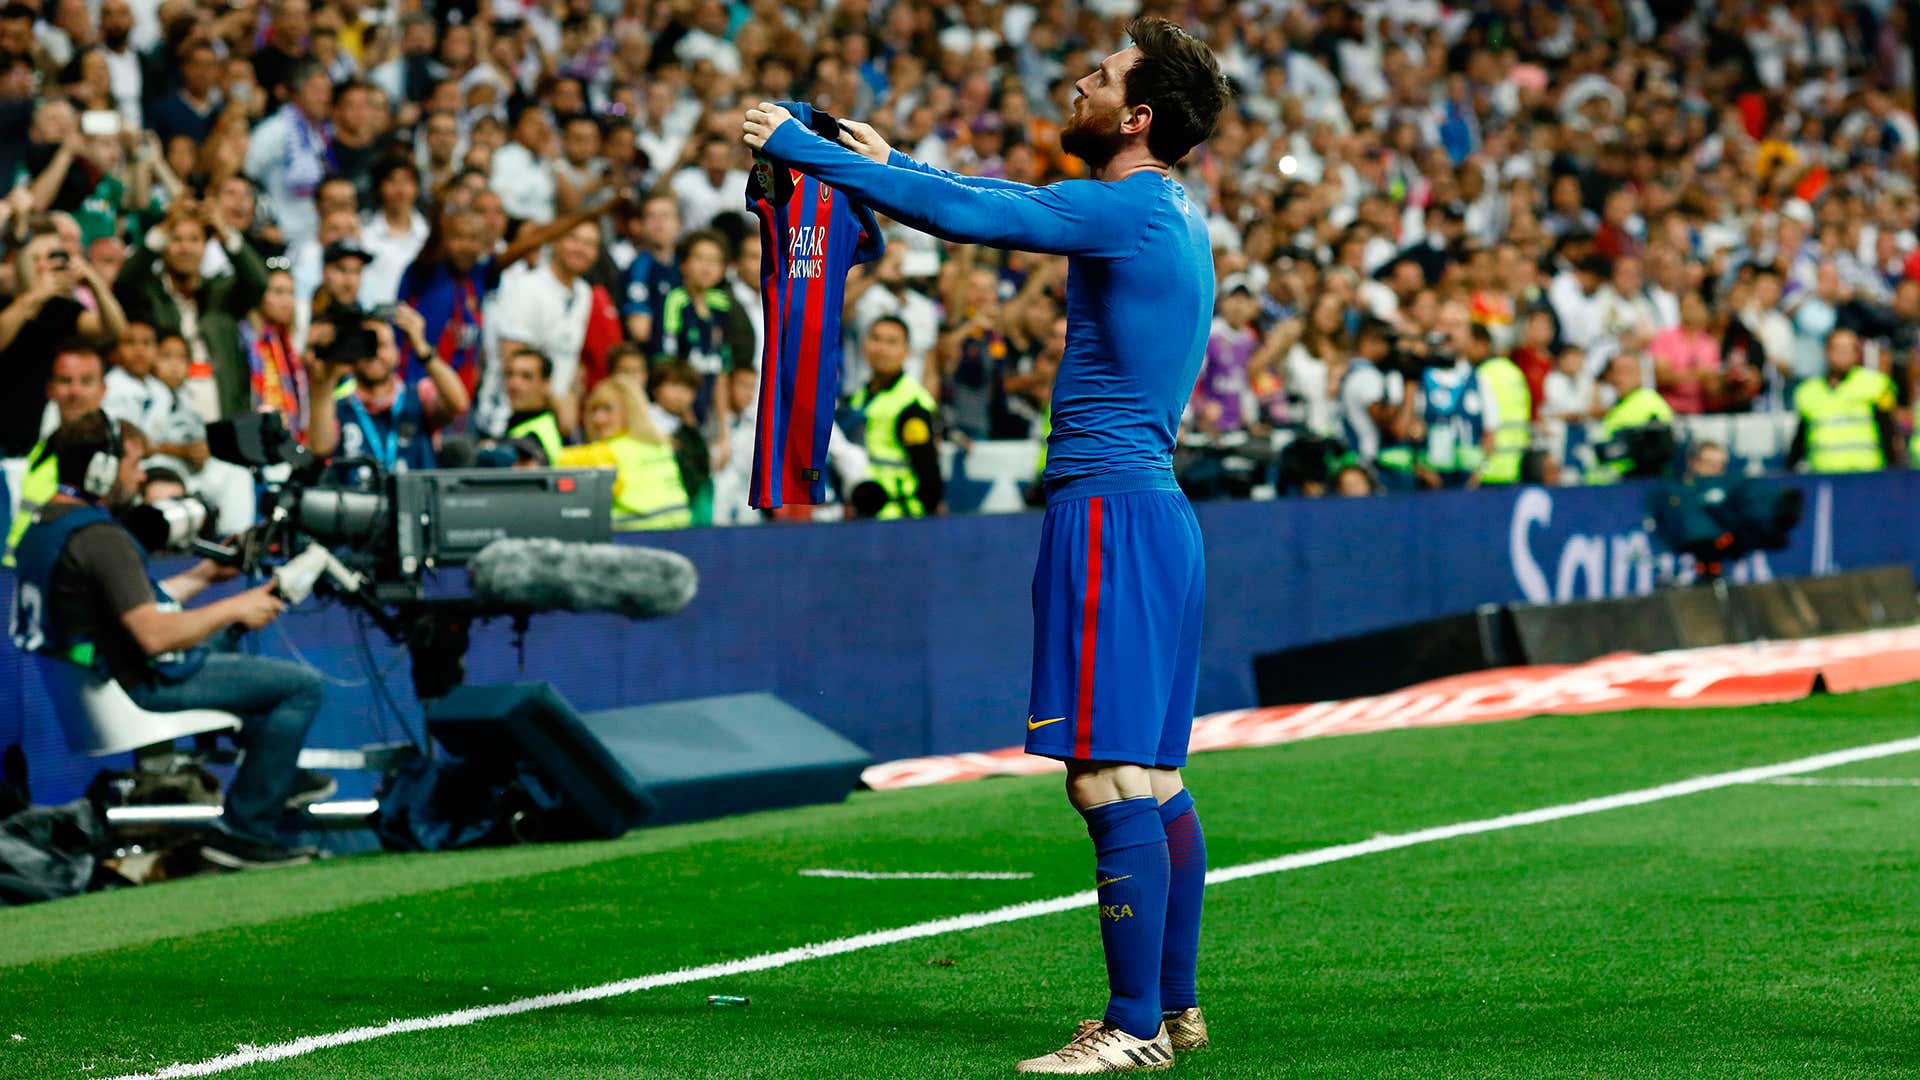 Messi đã trở thành một trong những cầu thủ bóng đá xuất sắc nhất mọi thời đại. Đồng hành cùng anh trong sự nghiệp của mình sẽ đem lại cho bạn những trải nghiệm tuyệt vời về môn thể thao này.